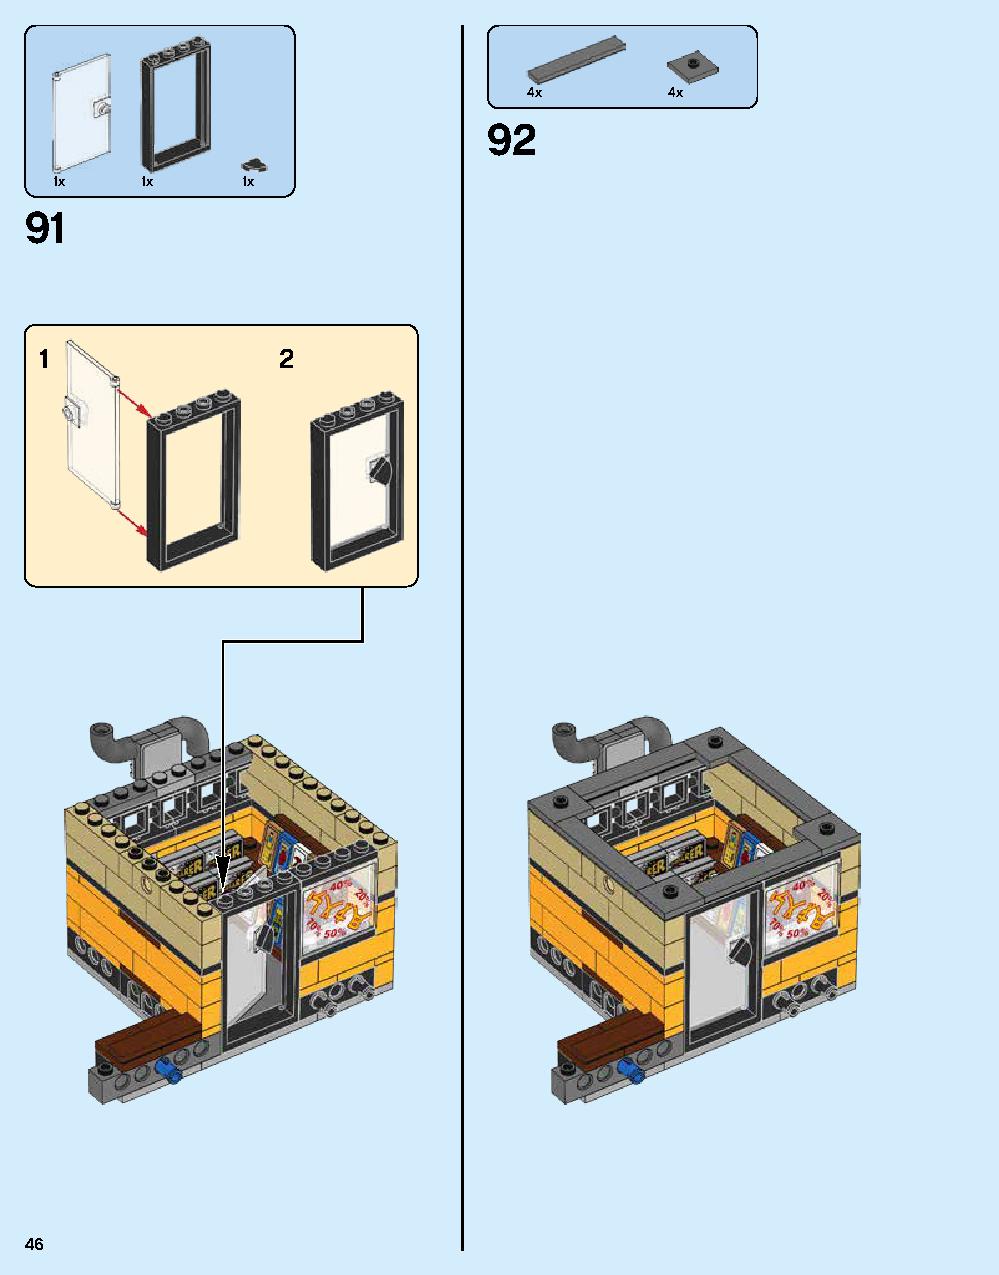 ニンジャゴー シティ 70620 レゴの商品情報 レゴの説明書・組立方法 46 page